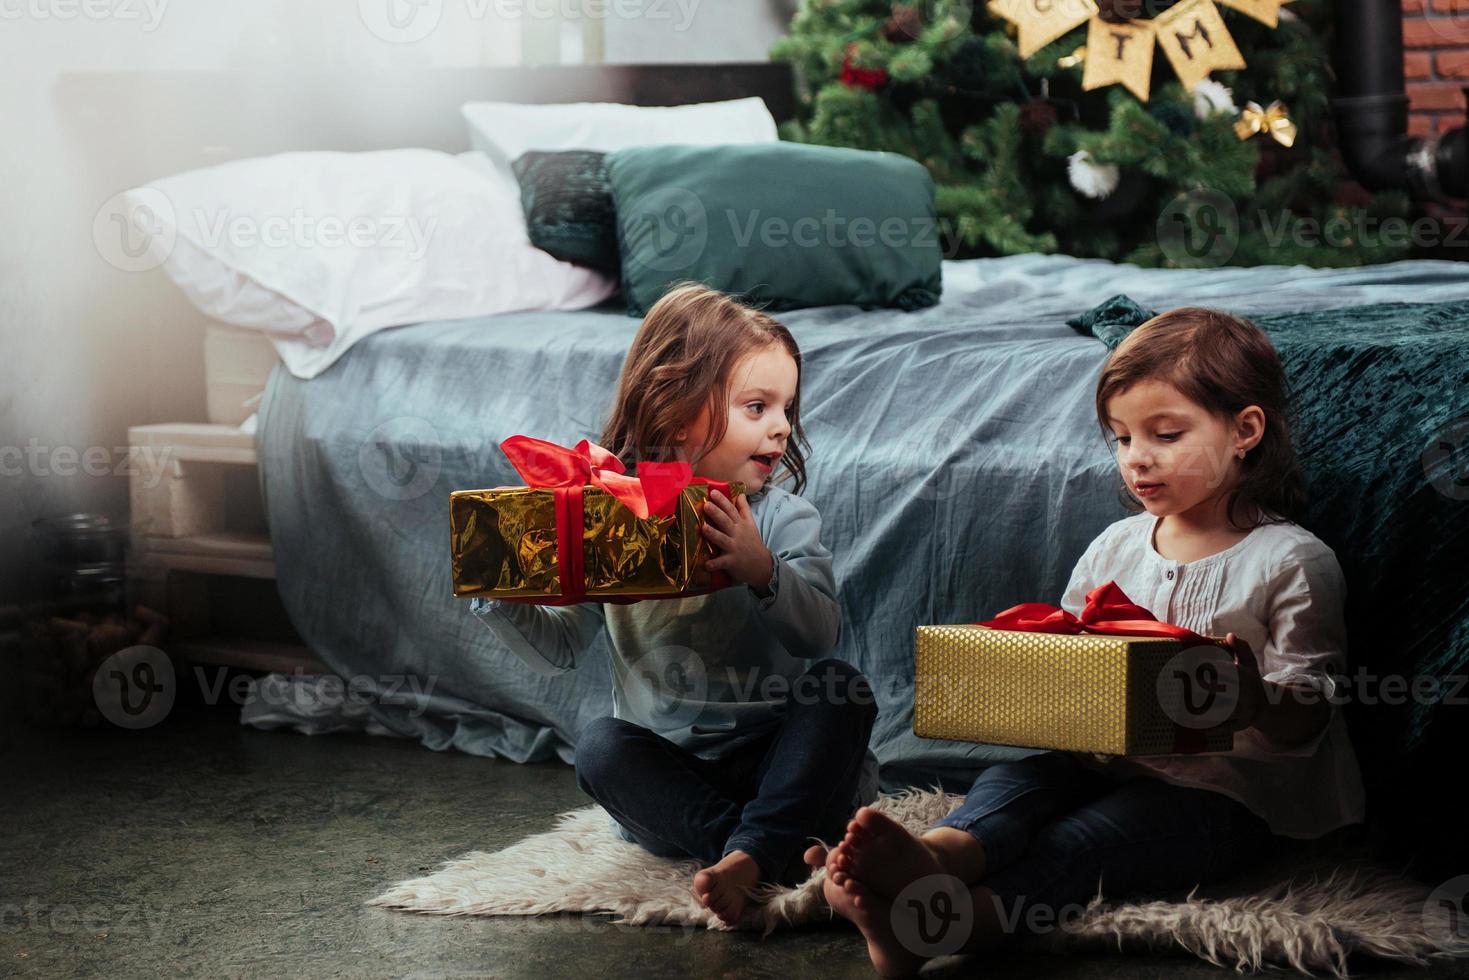 magnifique chambre décorée. vacances de noël avec des cadeaux pour ces deux enfants assis à l'intérieur dans la belle chambre près du lit photo